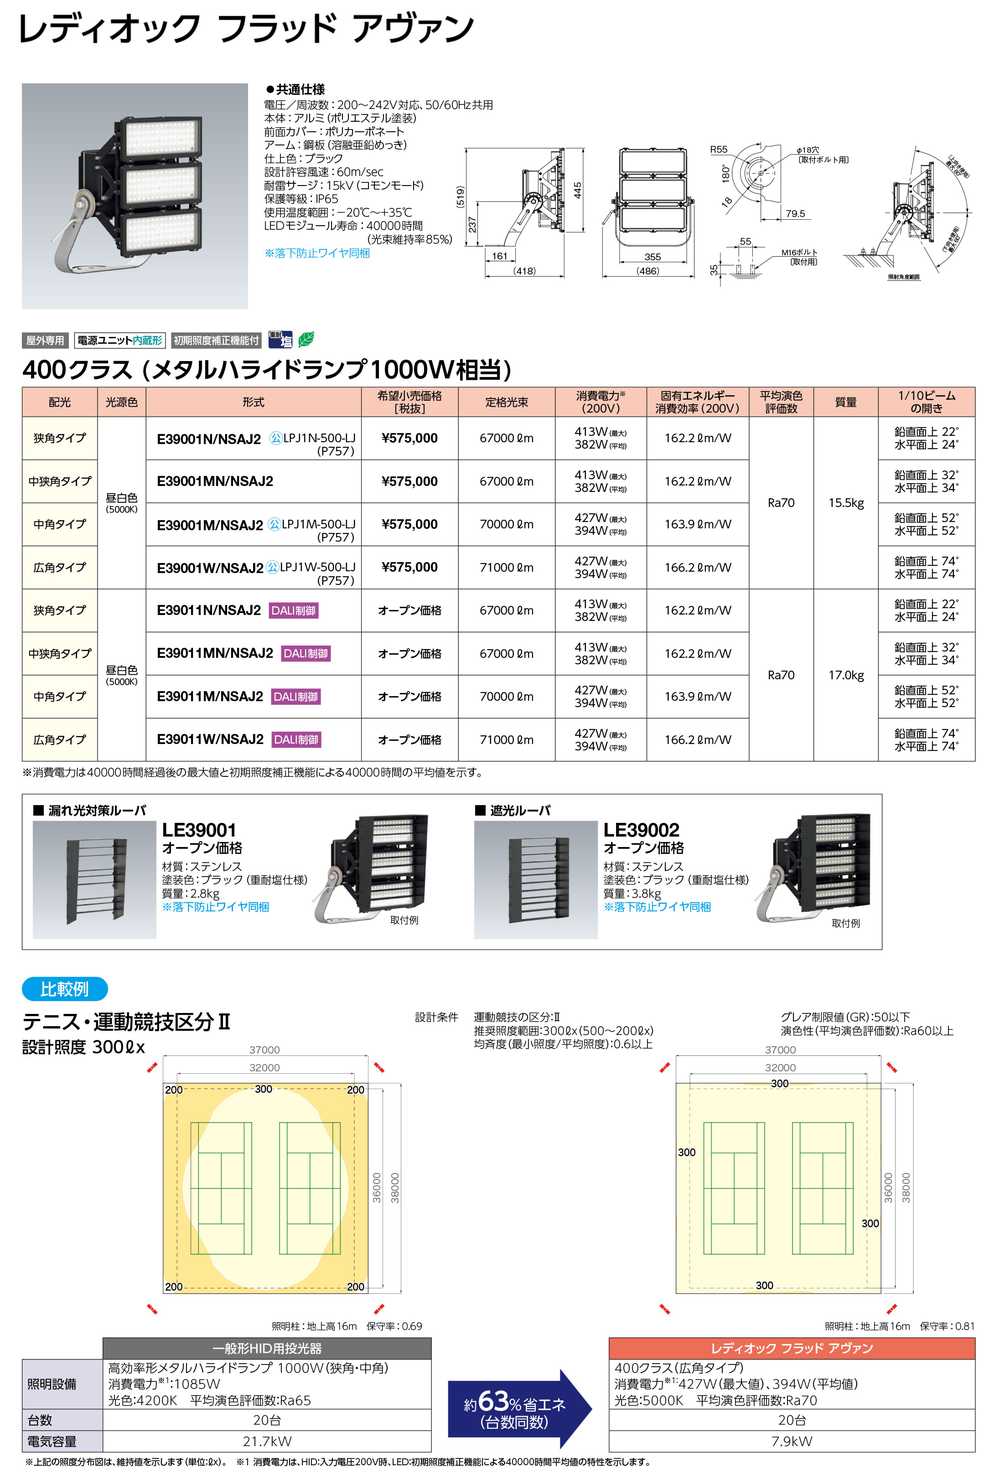 岩崎電気 E37001W/NSAJ8 LED投光器 レディオック フラッド アヴァン 150クラス (水銀ランプ700W相当) 広角タイプ  激安特価販売